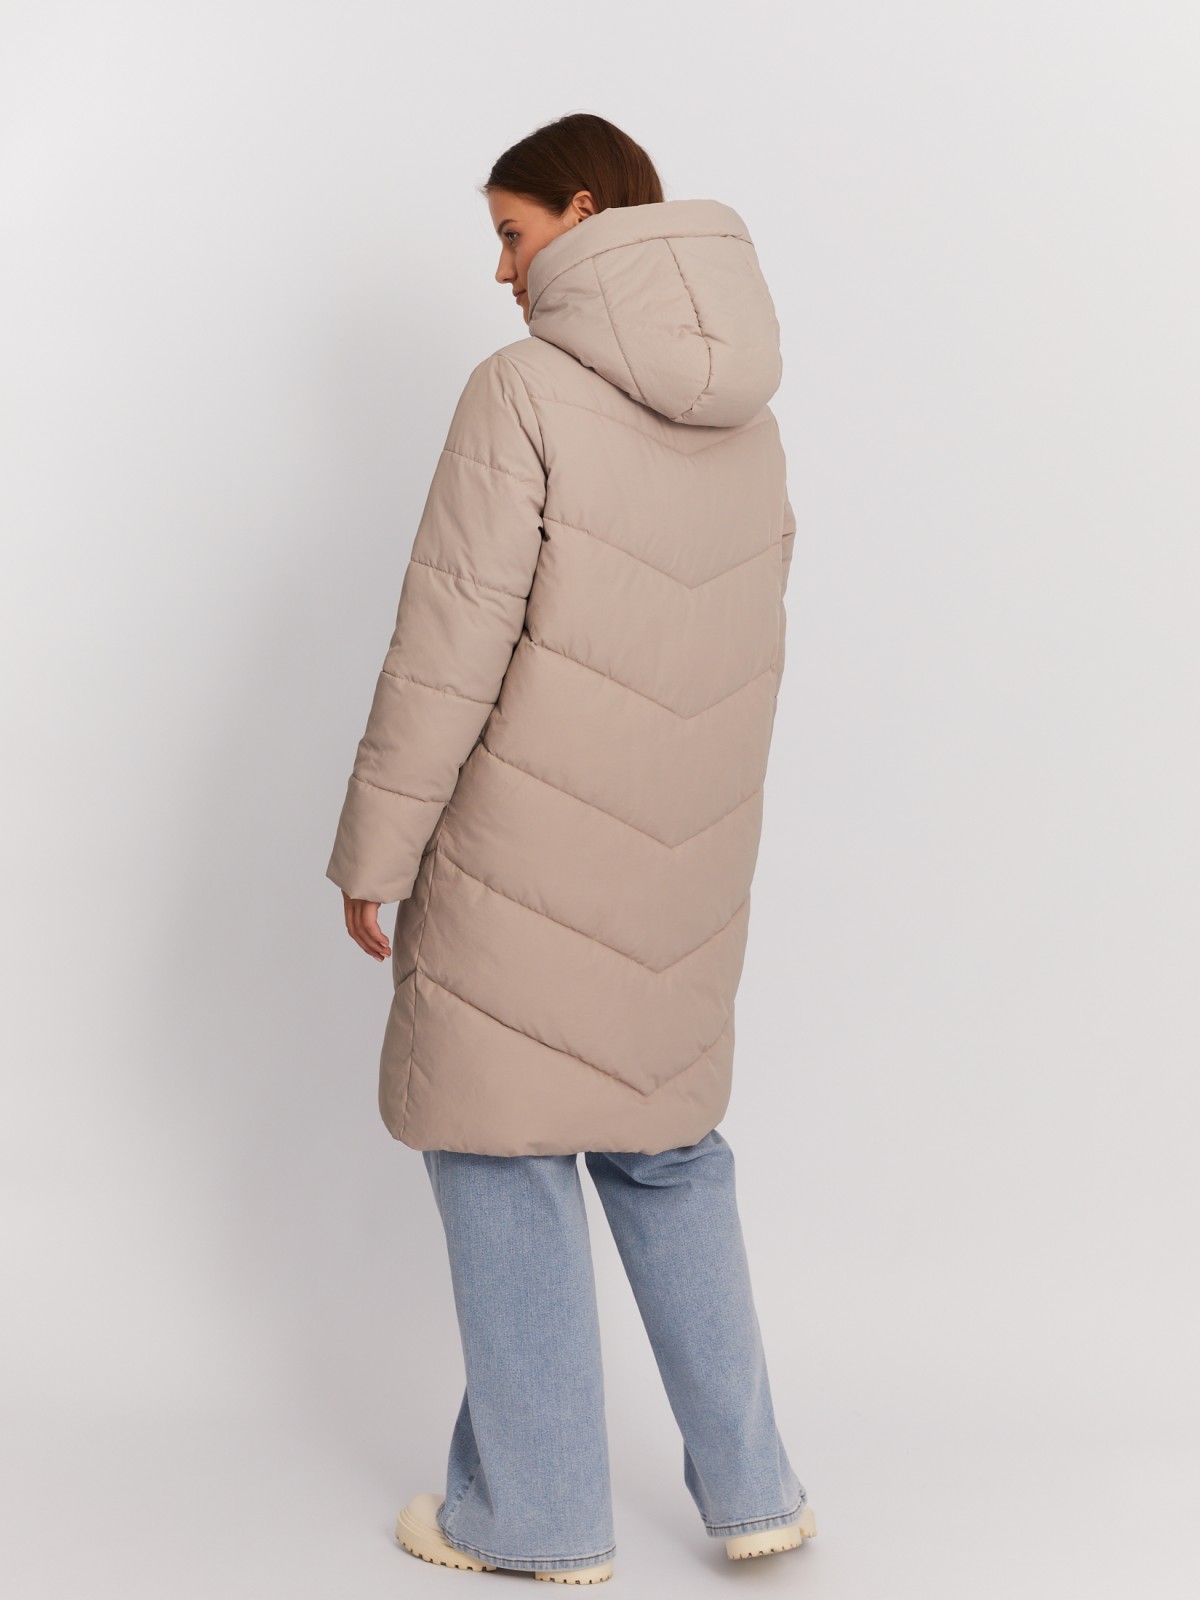 Тёплая стёганая куртка-пальто удлинённого фасона с капюшоном